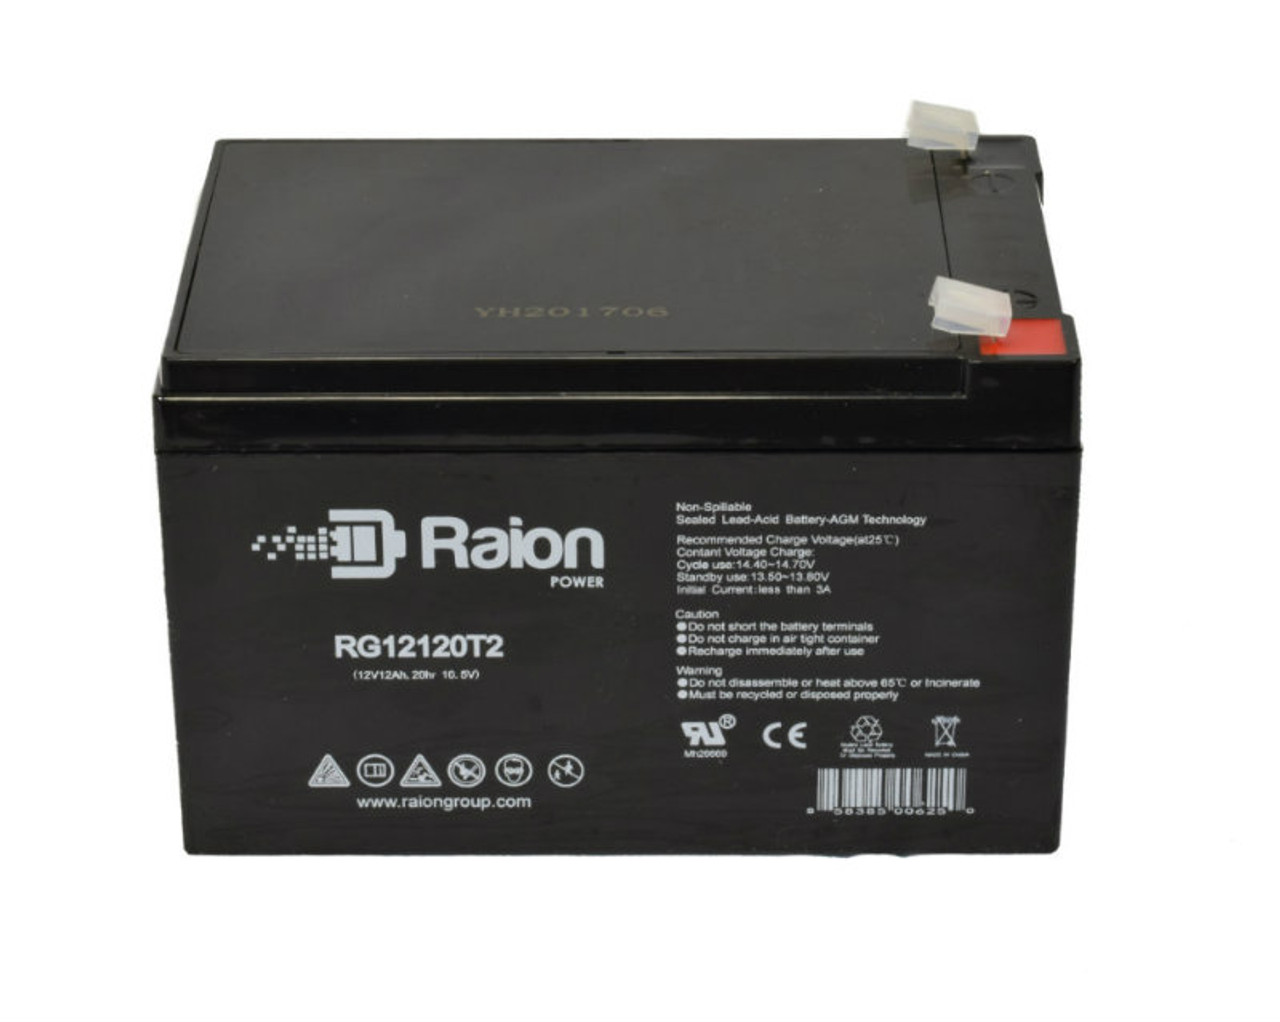 Raion Power RG12120T2 SLA Battery for BladeZ XTR-S 450 Transport